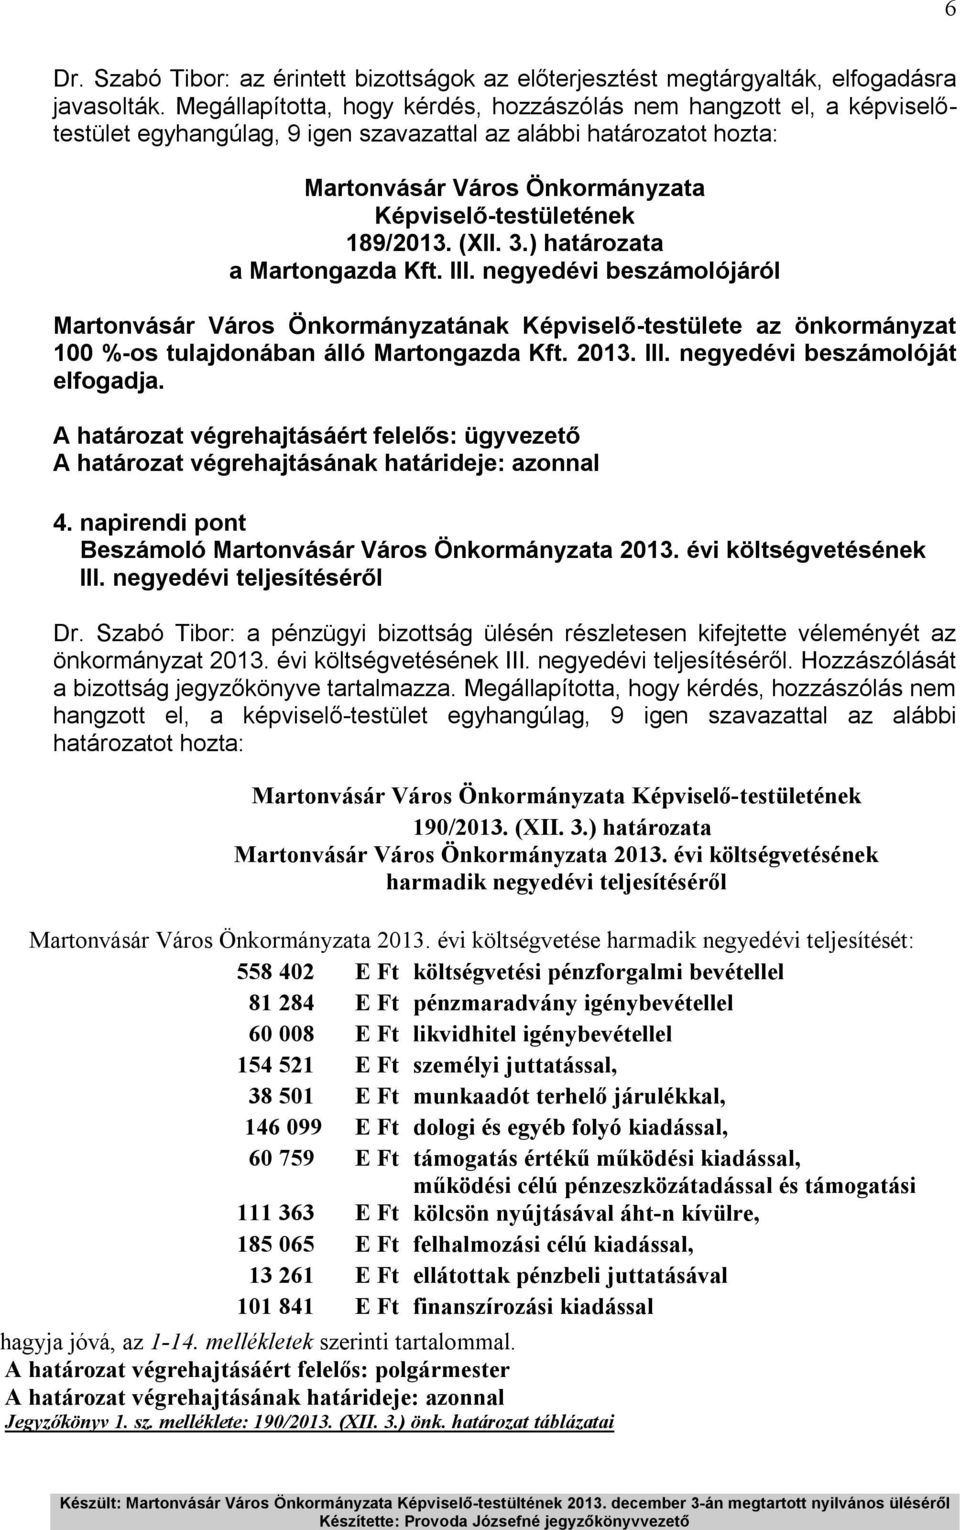 negyedévi beszámolójáról Martonvásár Város Önkormányzatának Képviselő-testülete az önkormányzat 100 %-os tulajdonában álló Martongazda Kft. 2013. III. negyedévi beszámolóját elfogadja.